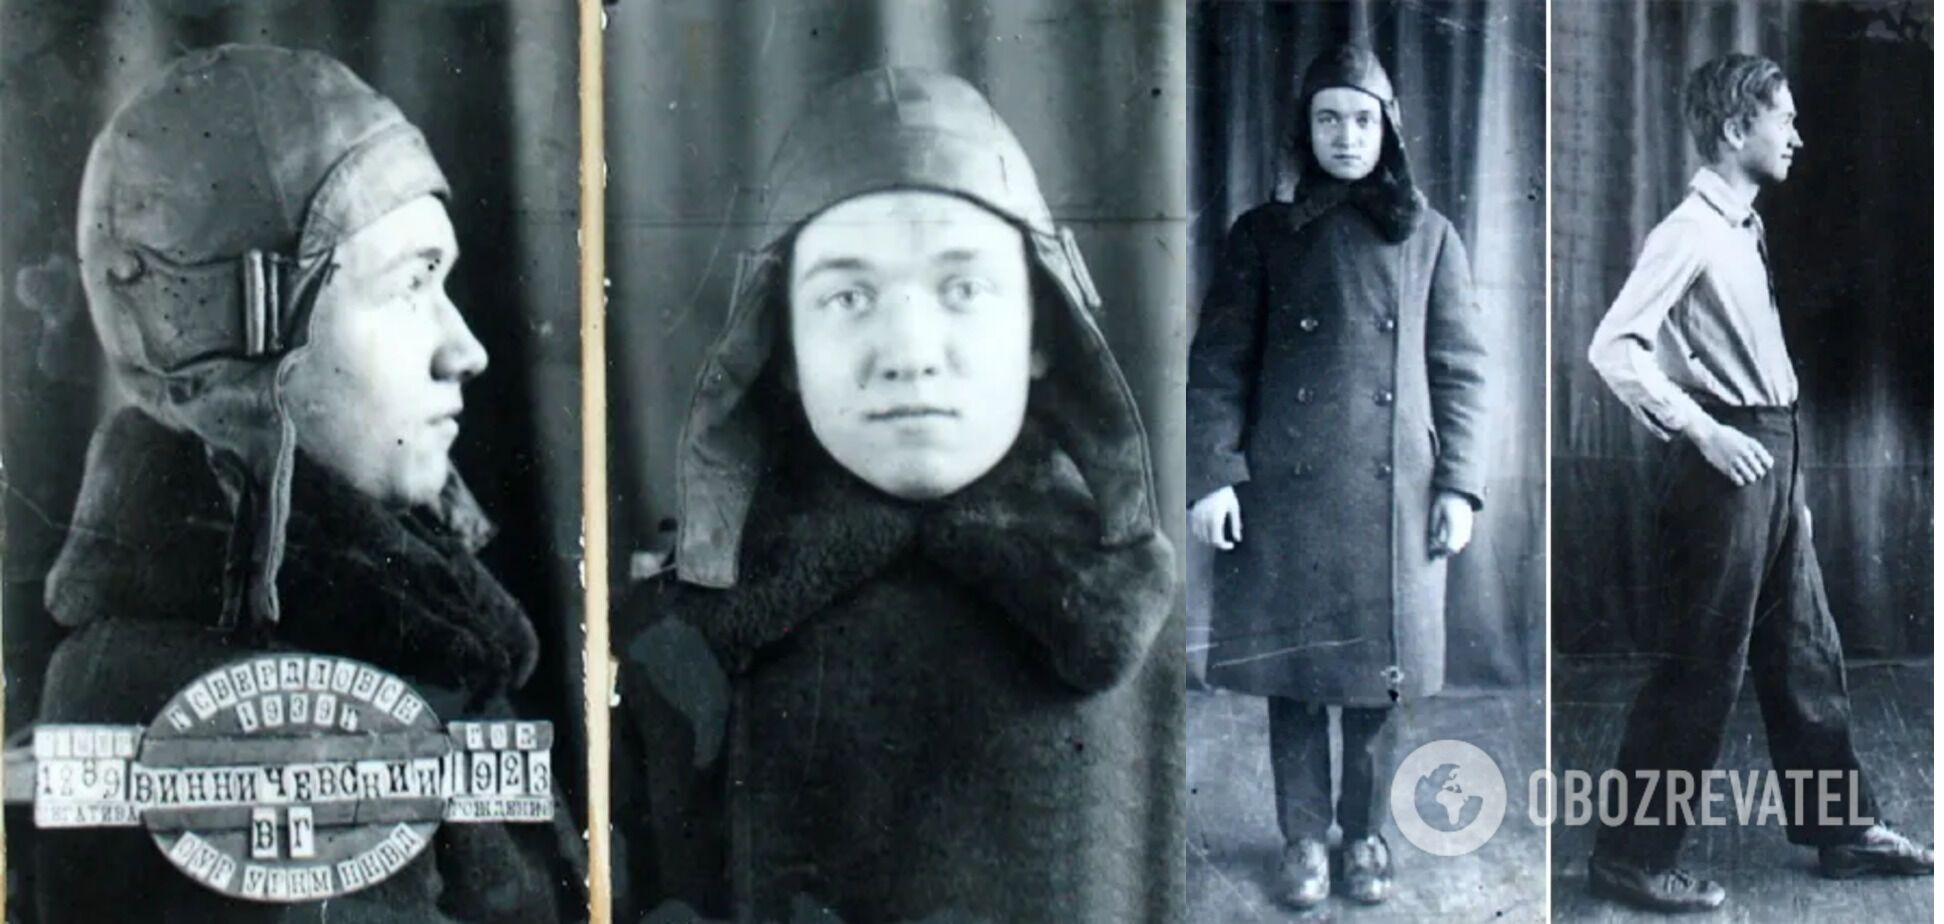 Владимир Винничевский, на второй части фото – в день задержания